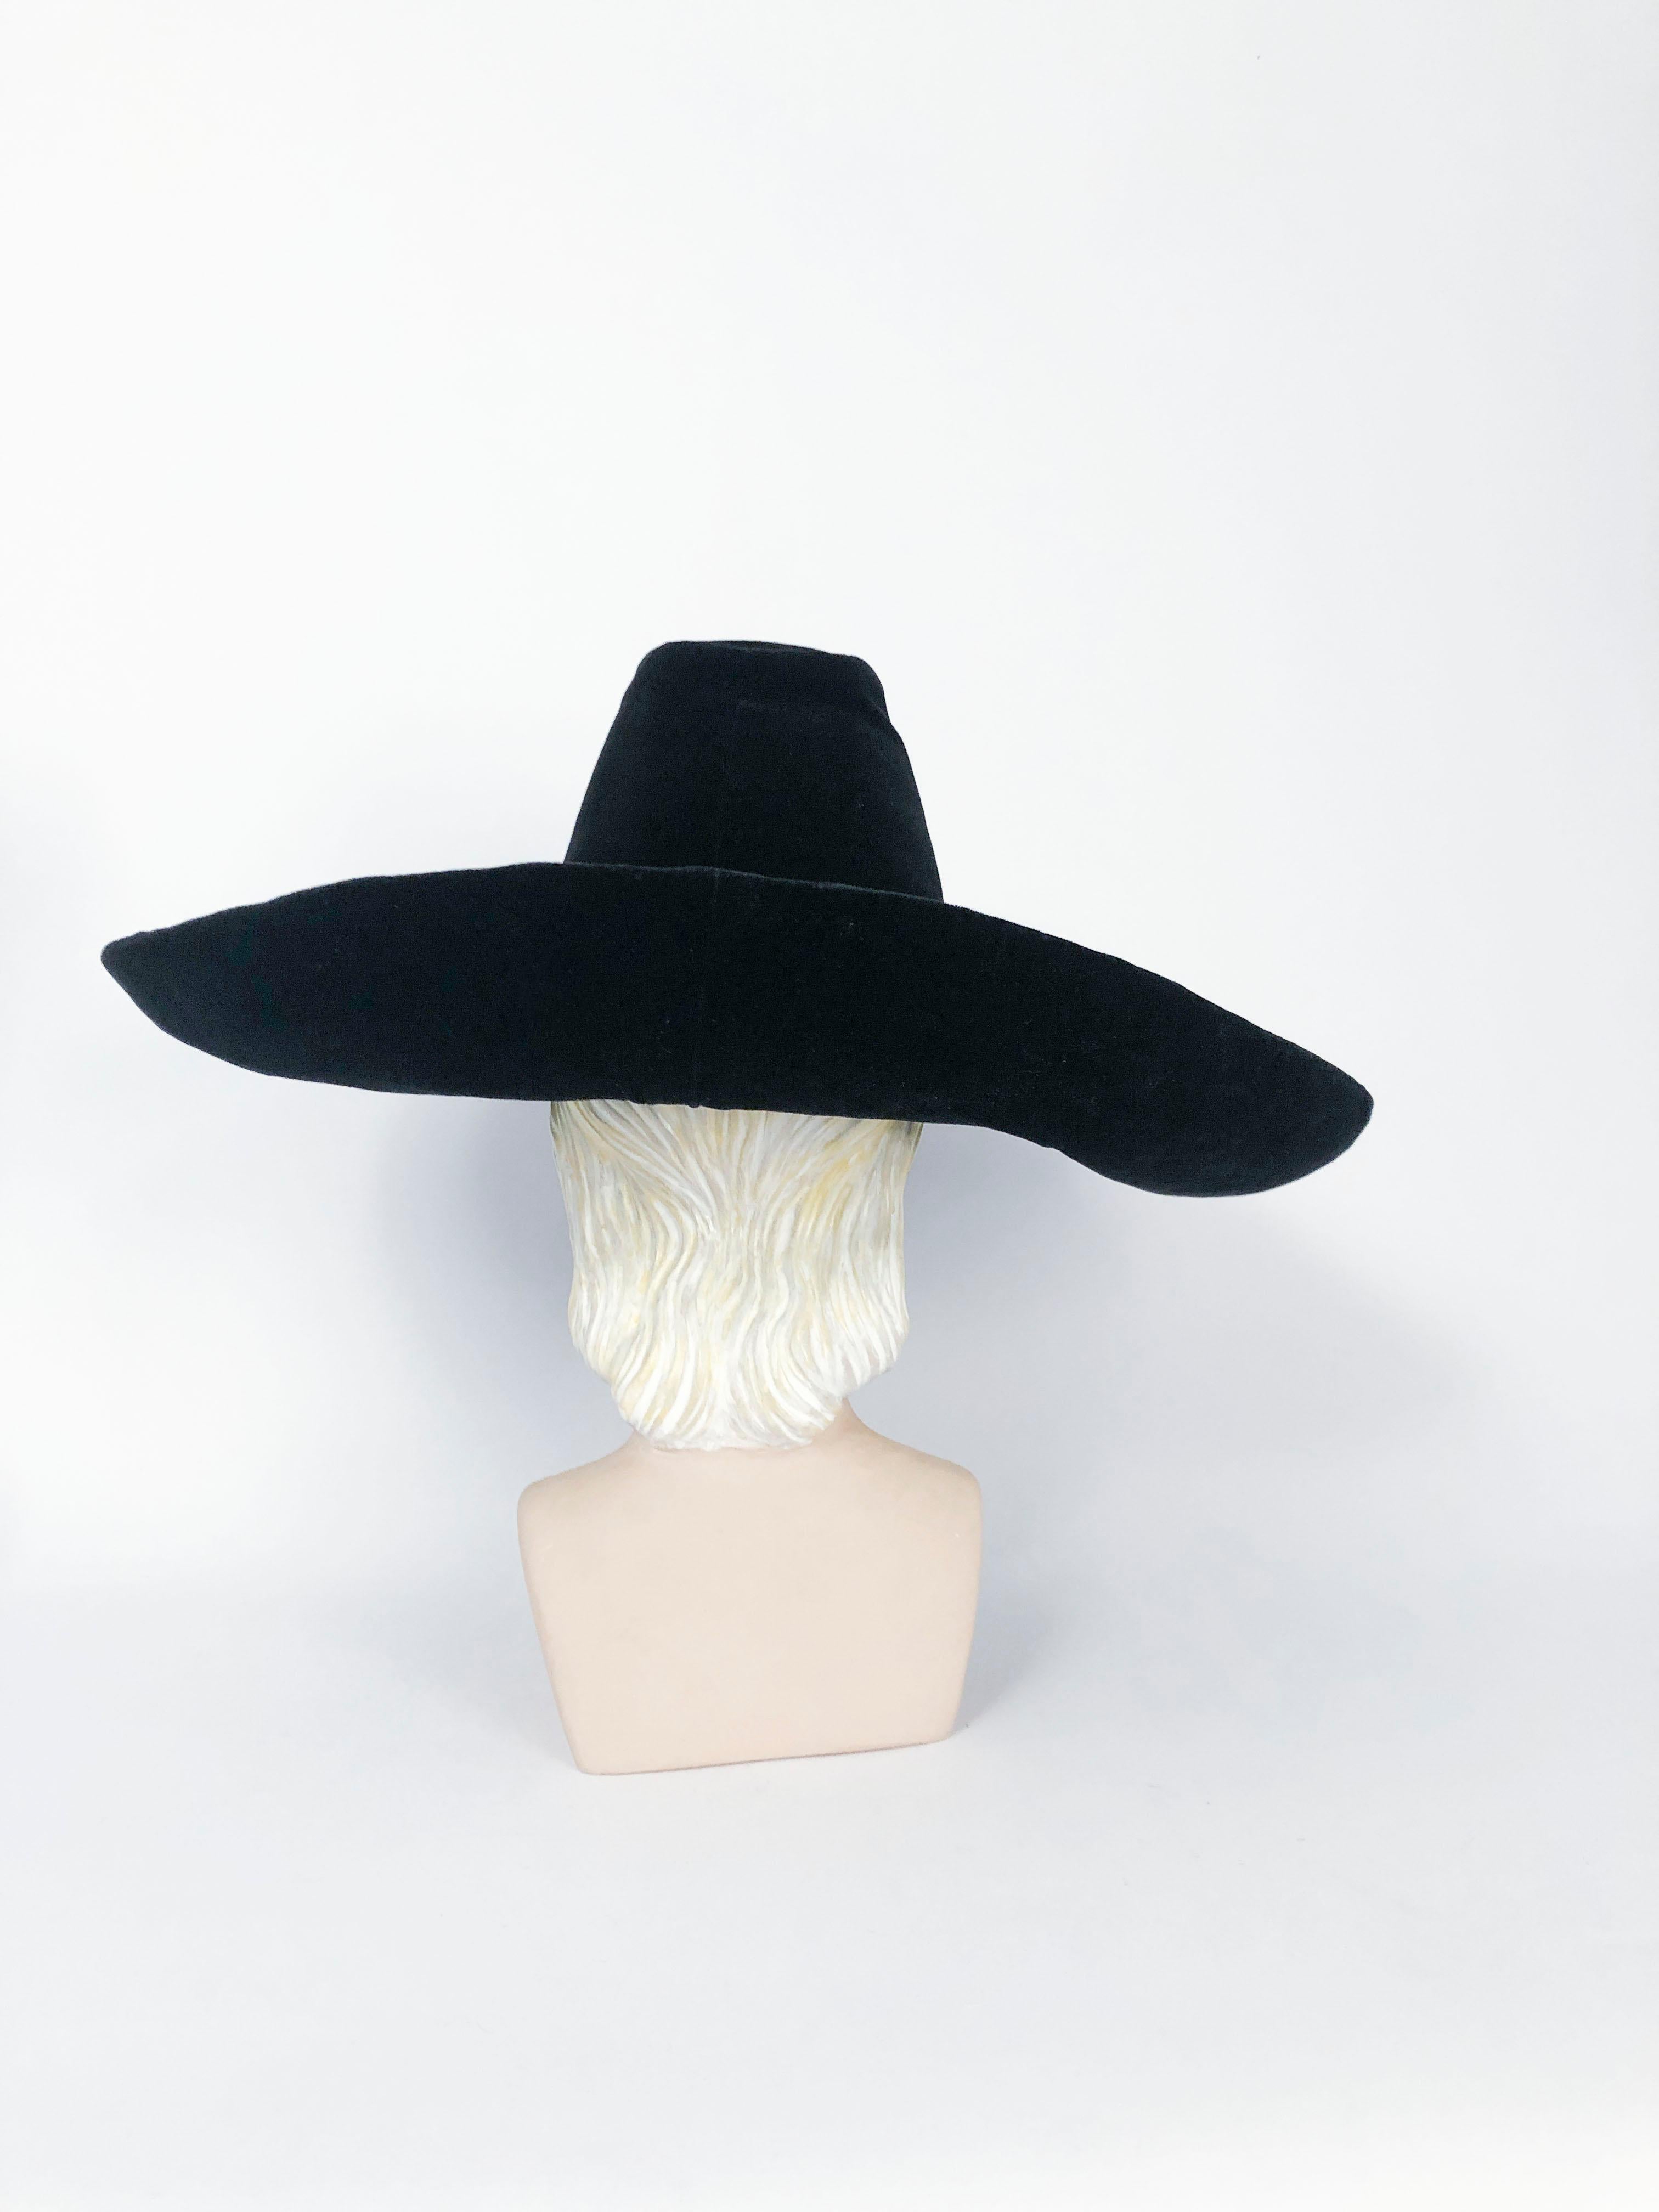 1930s cowboy hat